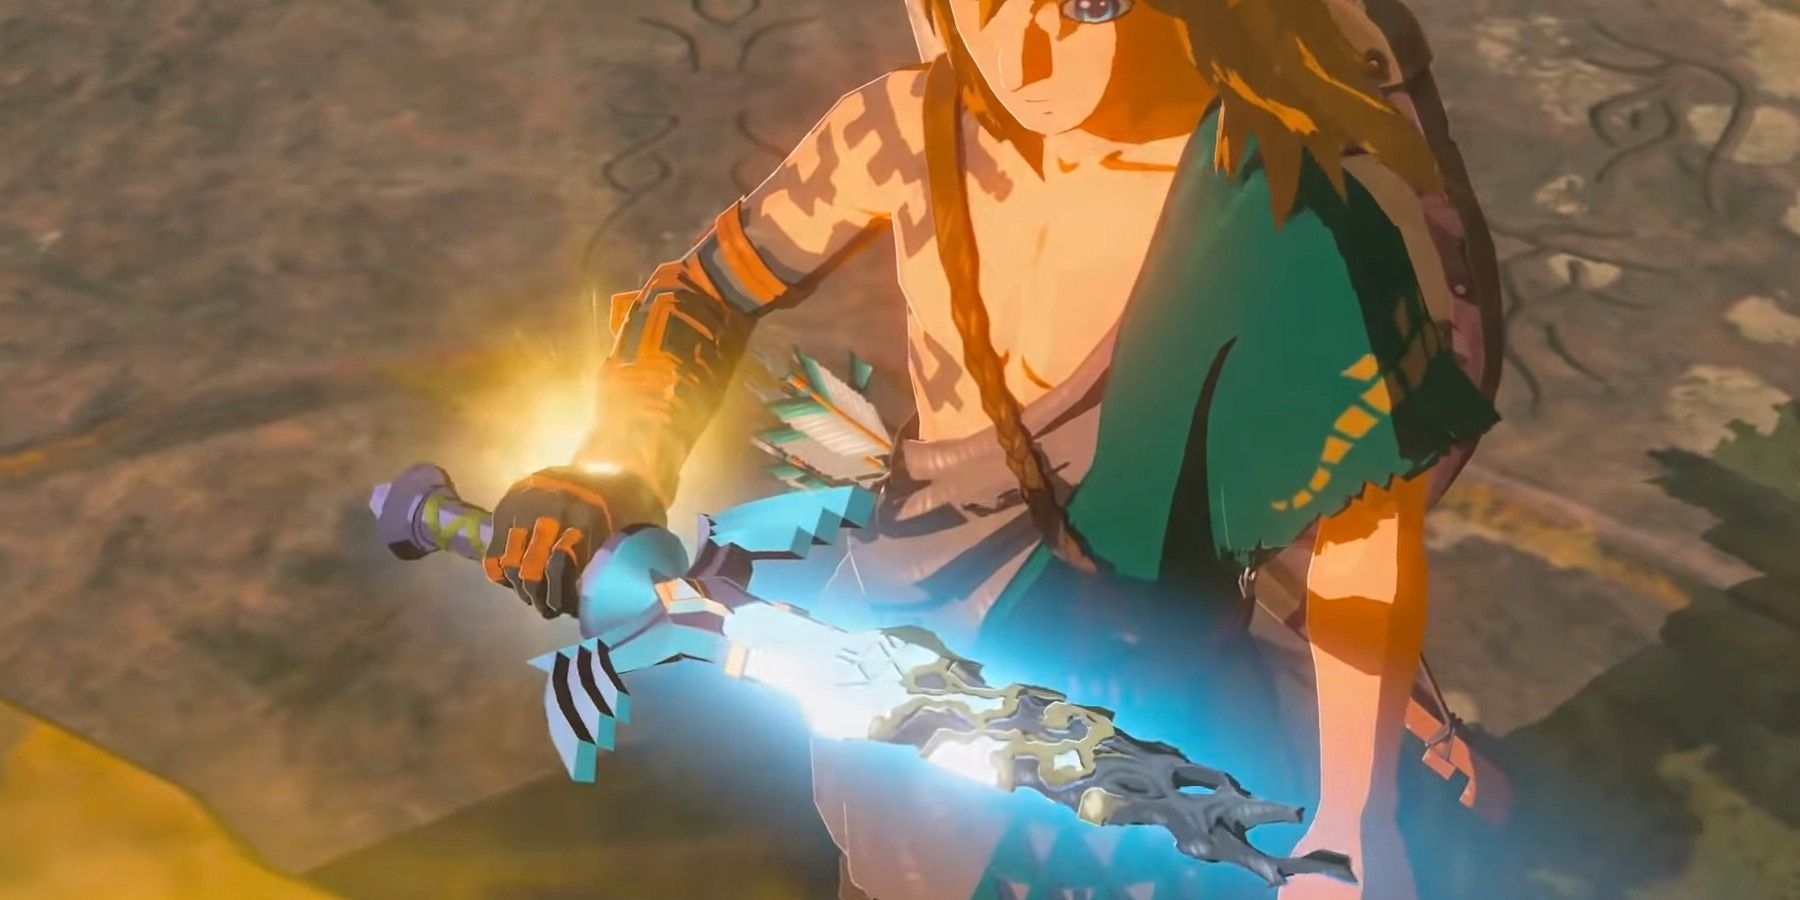 Master Sword de BOTW 2 insinúa el regreso del peor personaje de Zelda